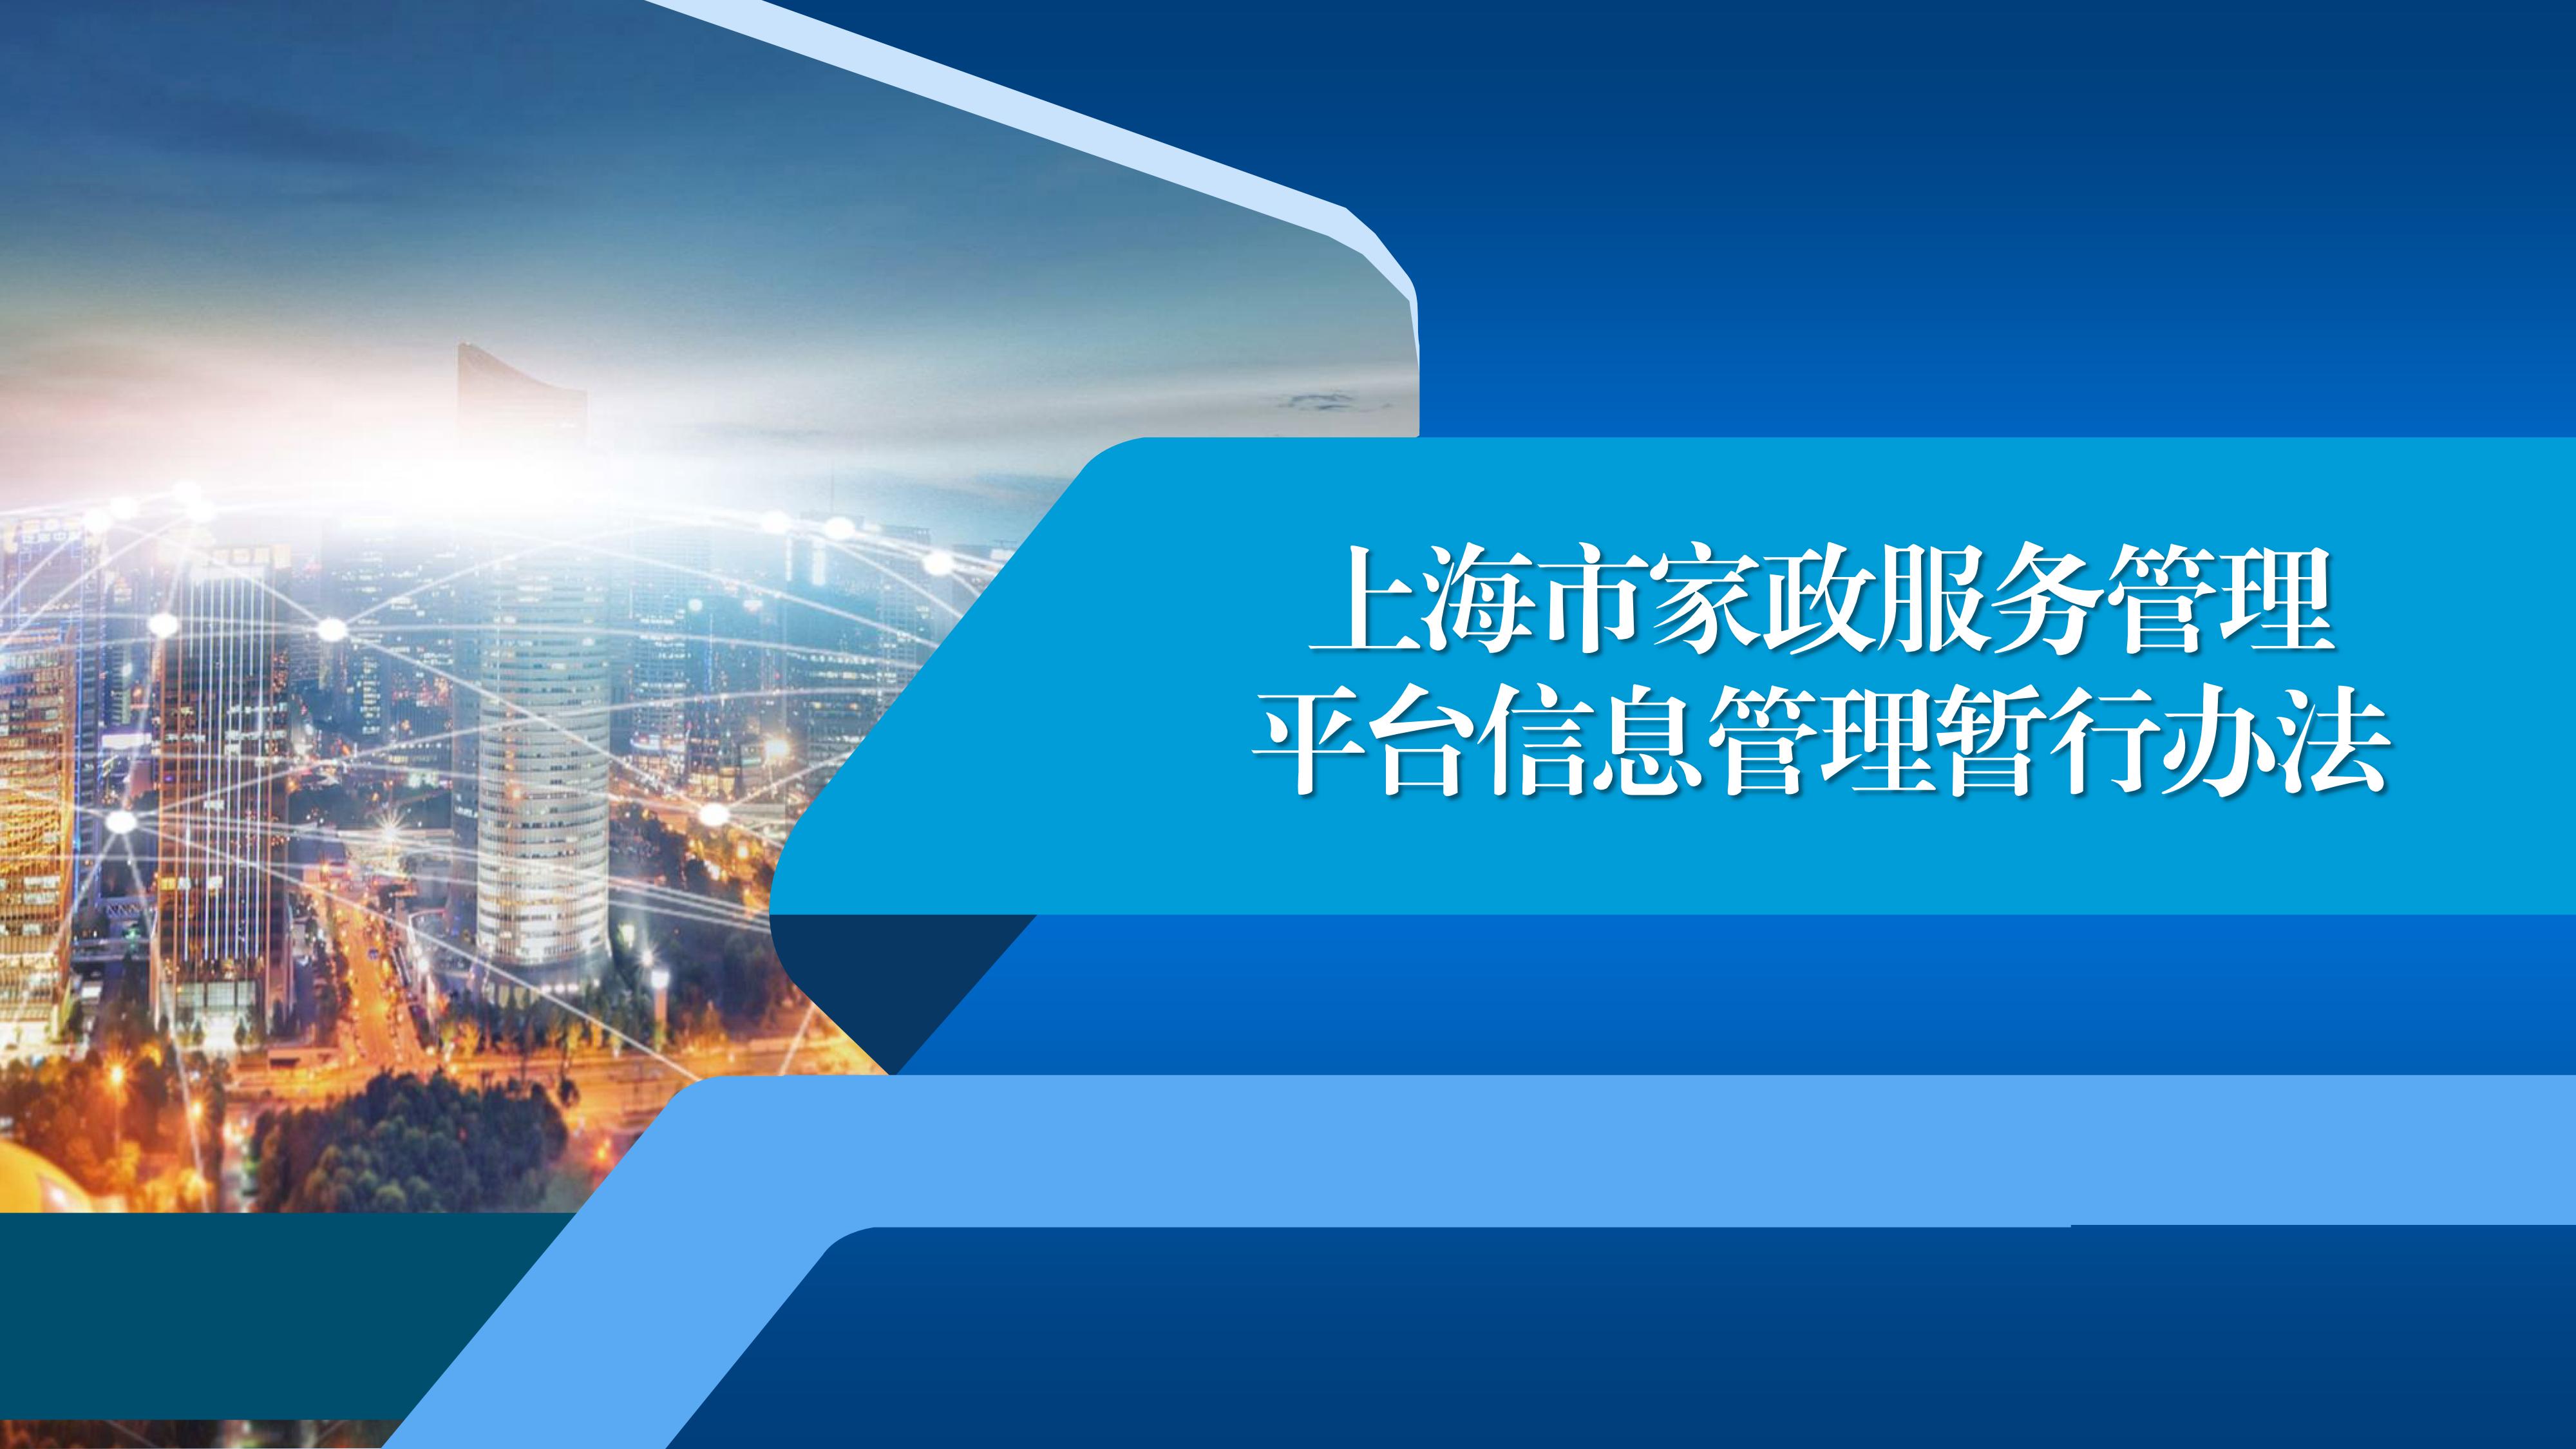 上海市家政服务管理平台信息管理暂行办法_01